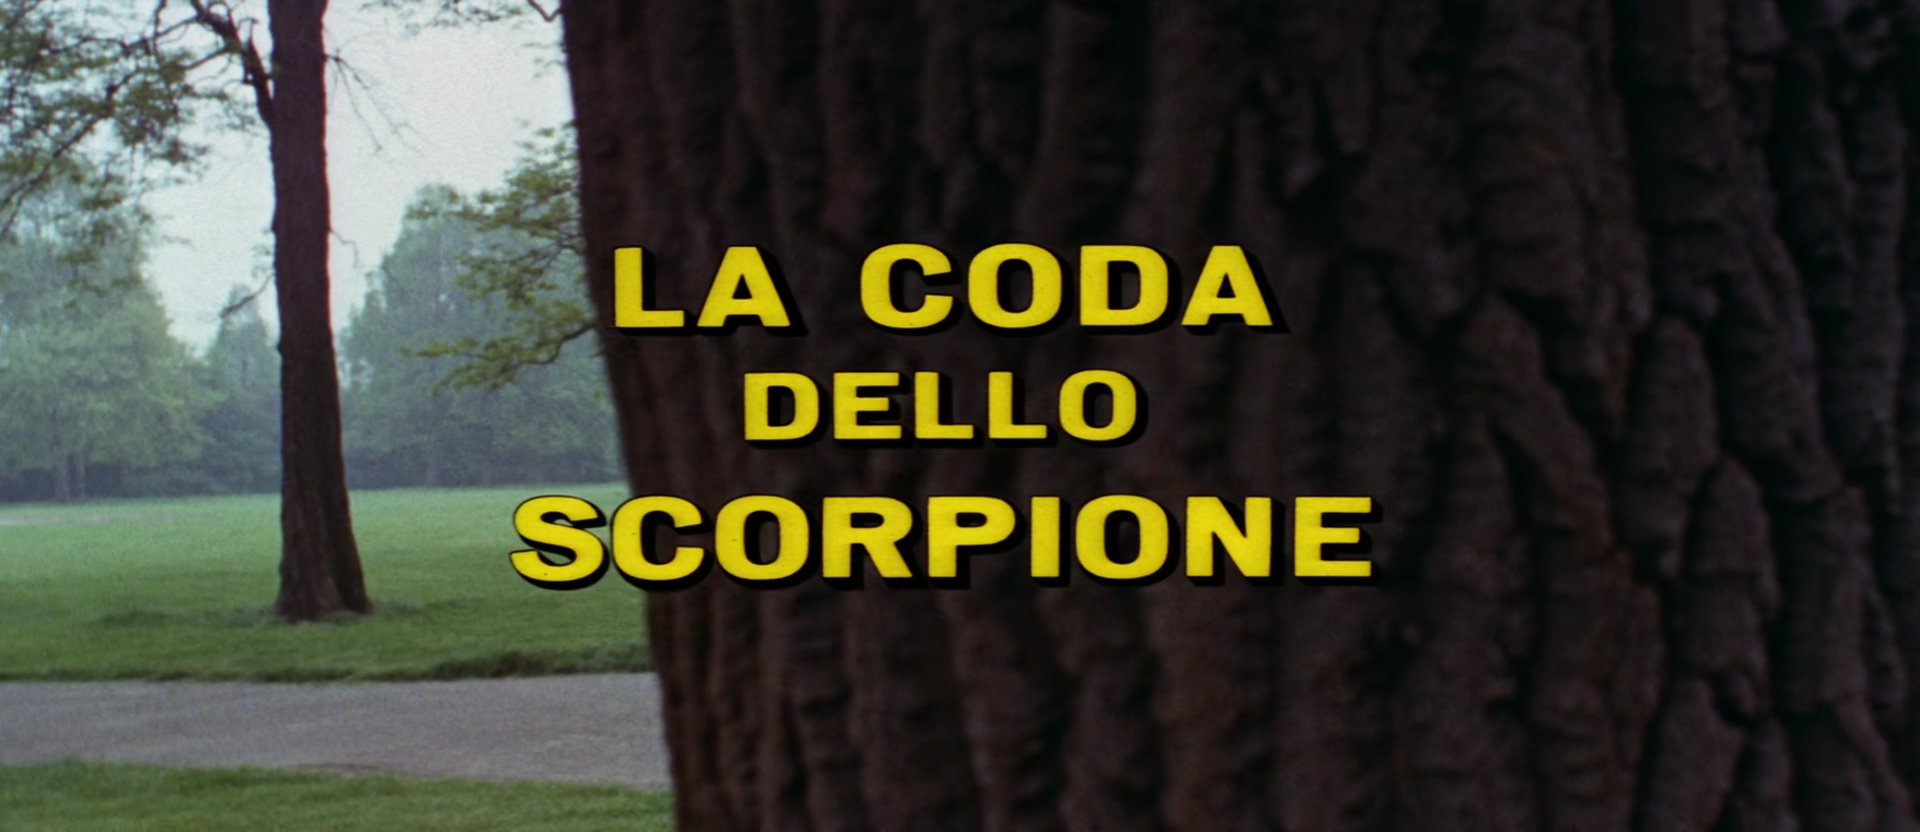 La coda dello scorpione (1971) Title.jpg